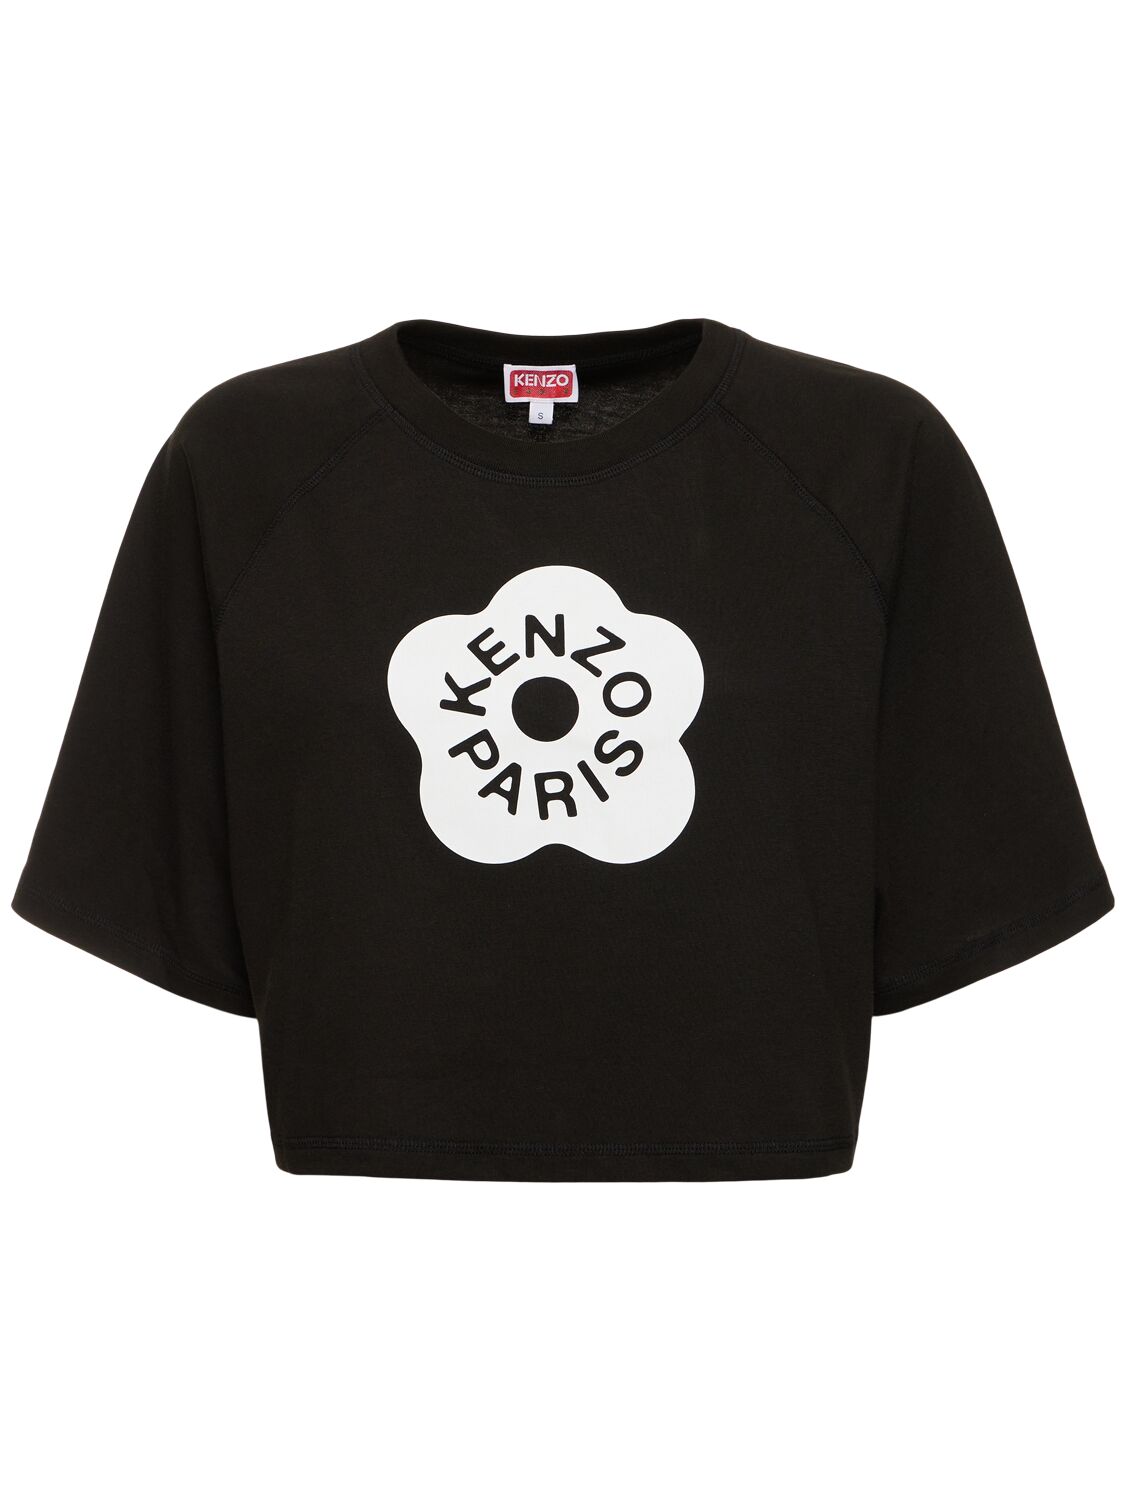 Boke Cropped Cotton Boxy T-shirt - KENZO PARIS - Modalova